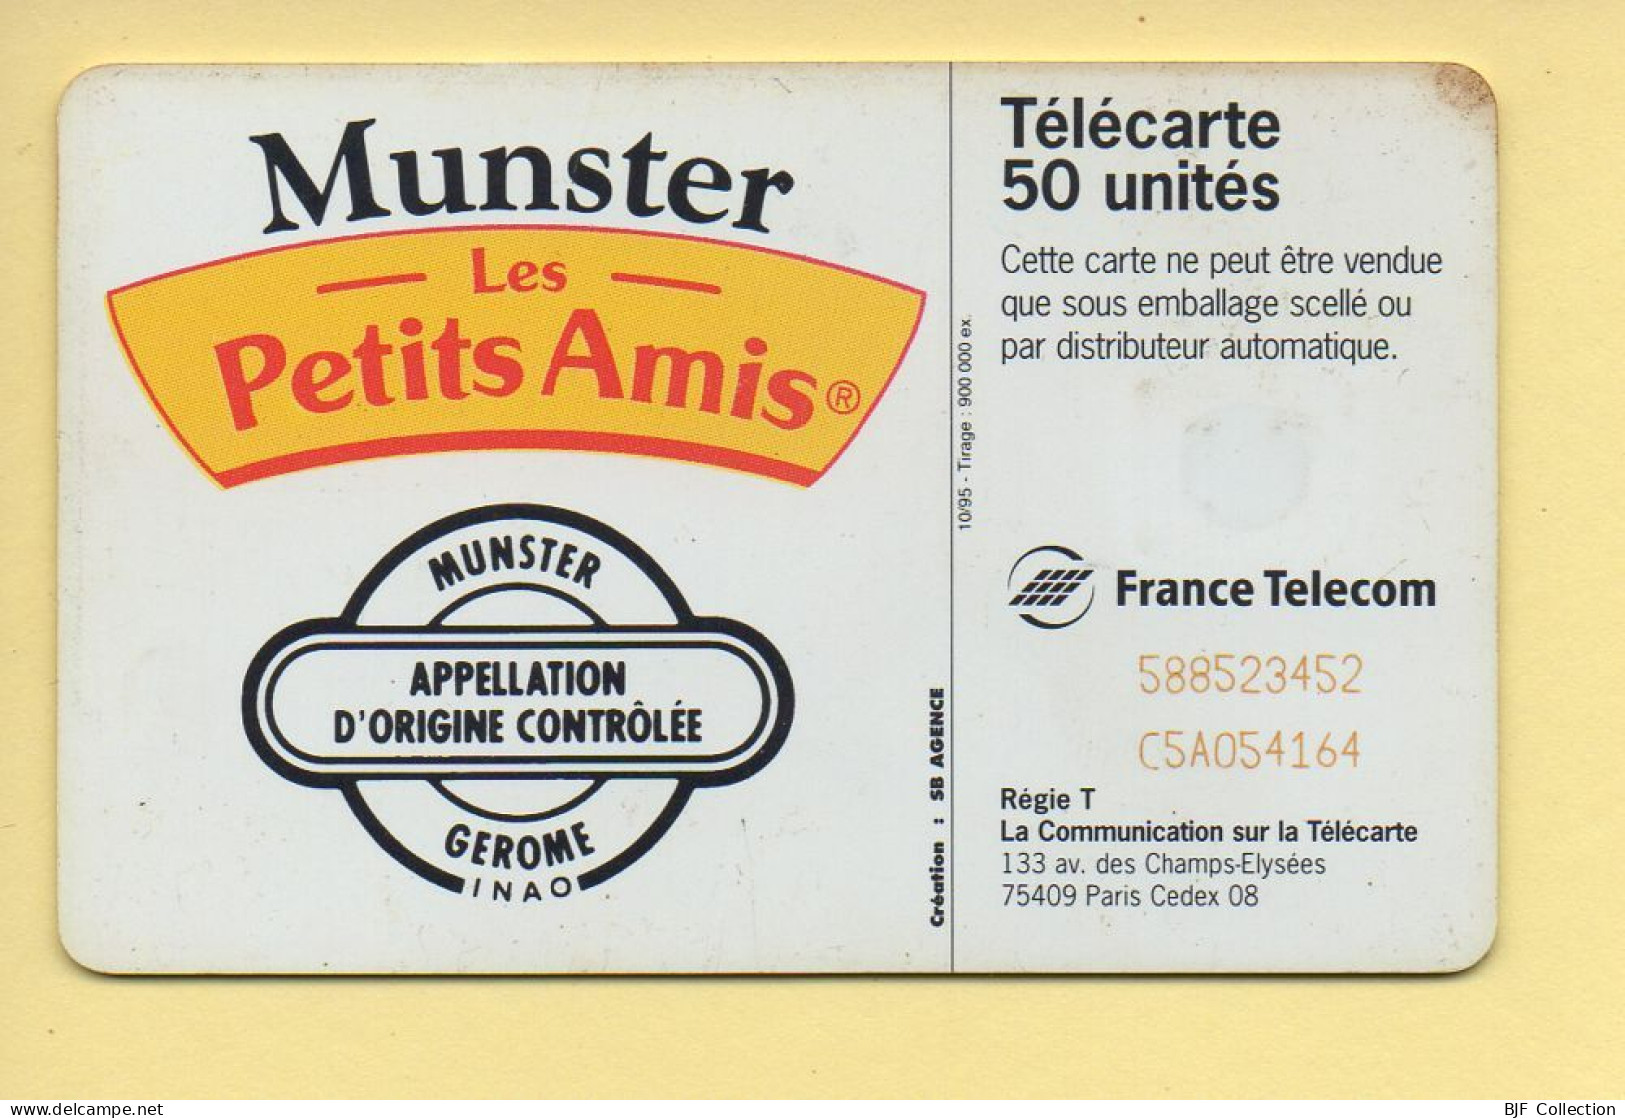 Télécarte 1995 : MUNSTER LES PETITS AMIS / 50 Unités / 10-95 (voir Puce Et Numéro Au Dos) - 1995